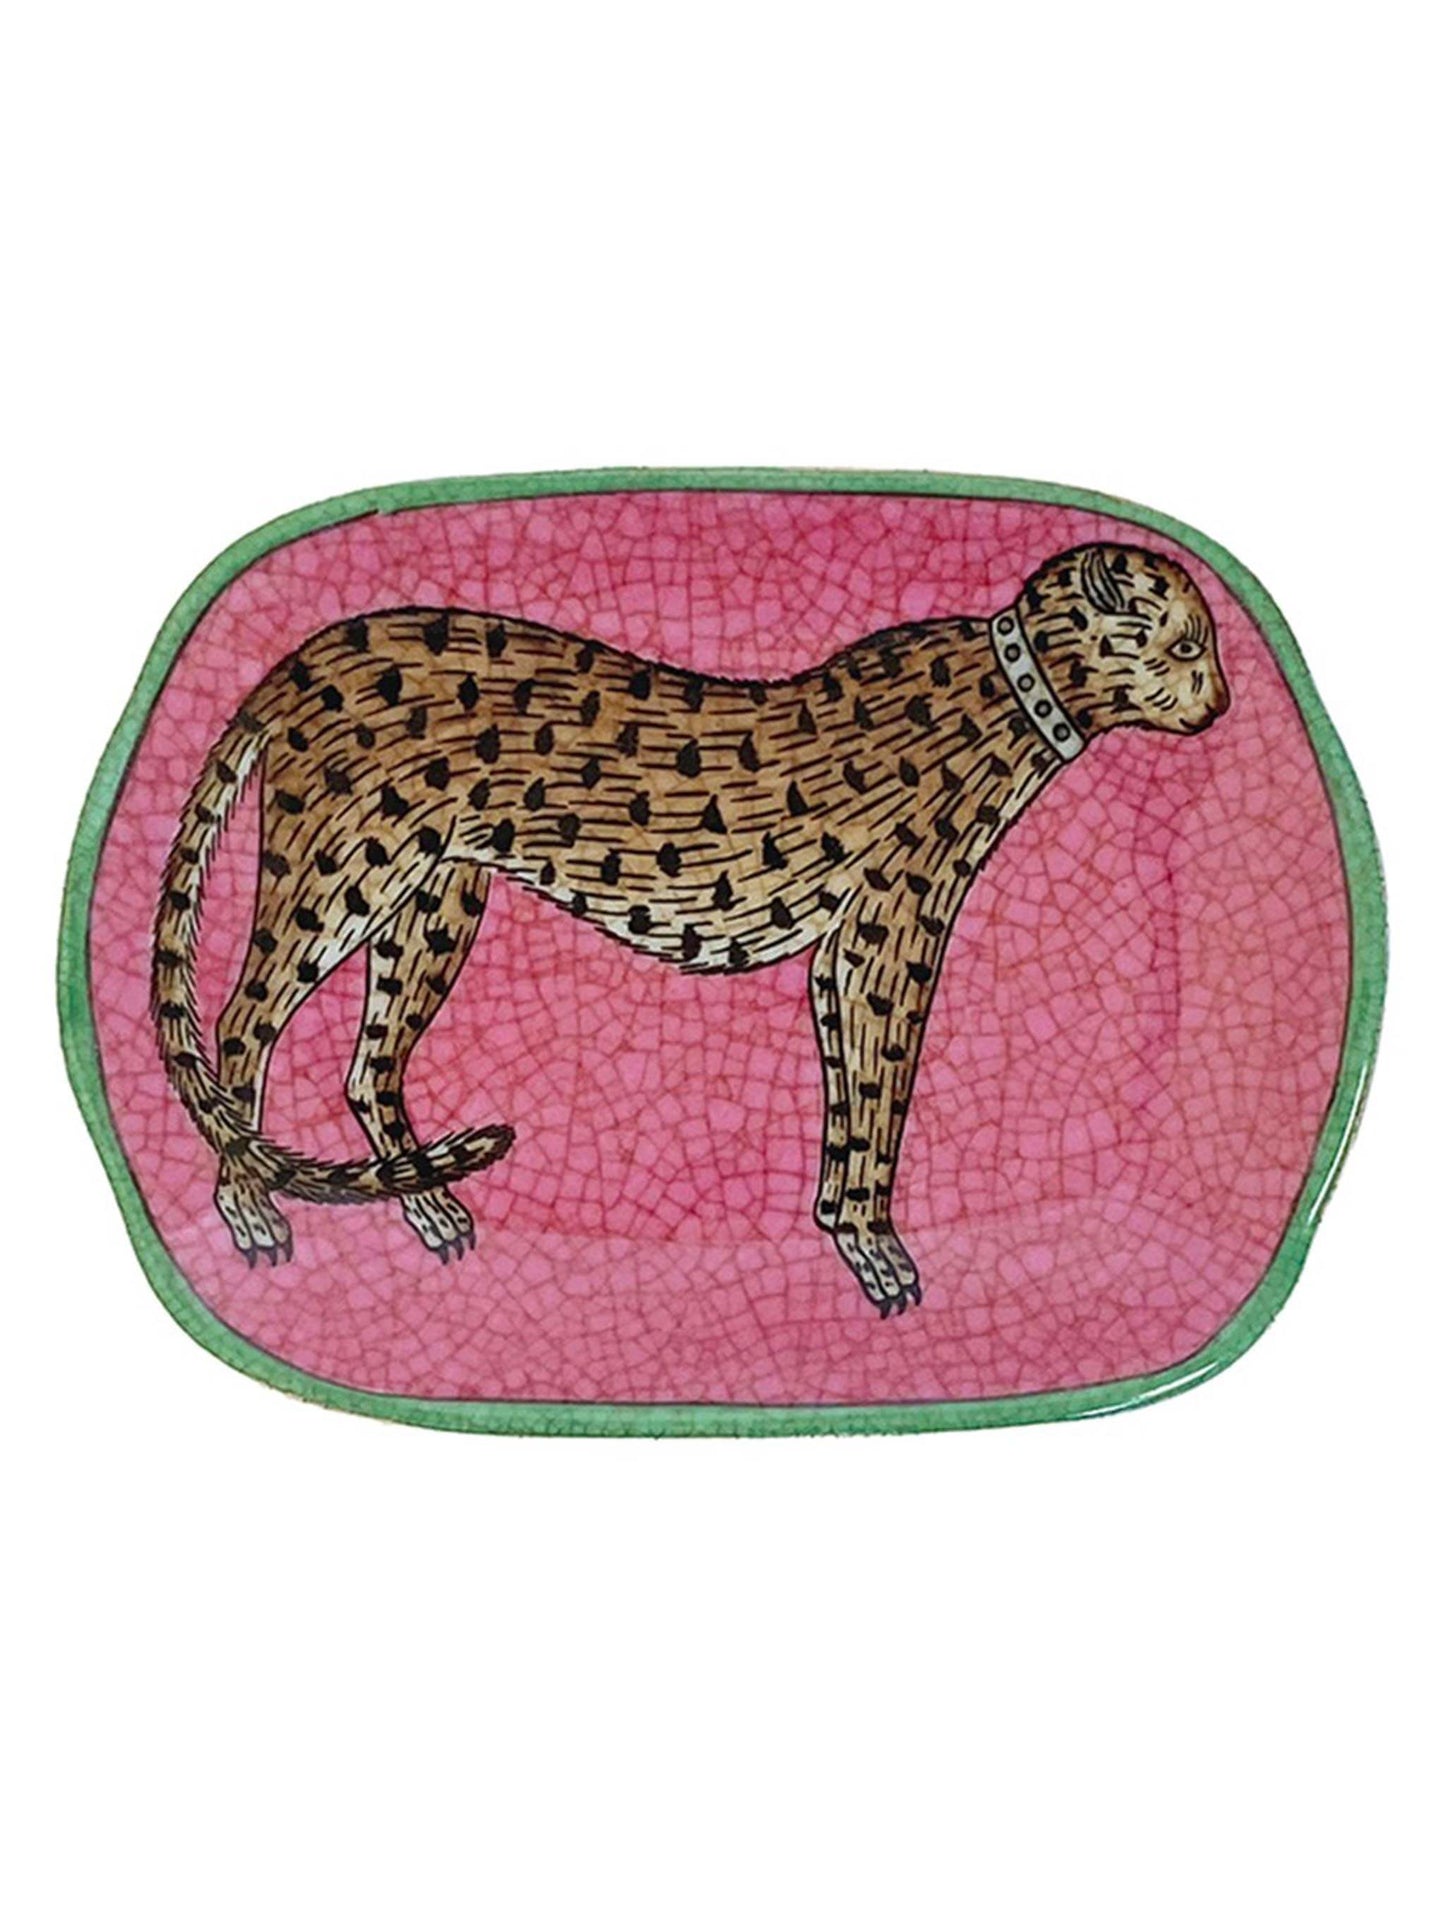 Porcelain Decorative Soap/Trinket Dish Leopardo Pink by C.A.M